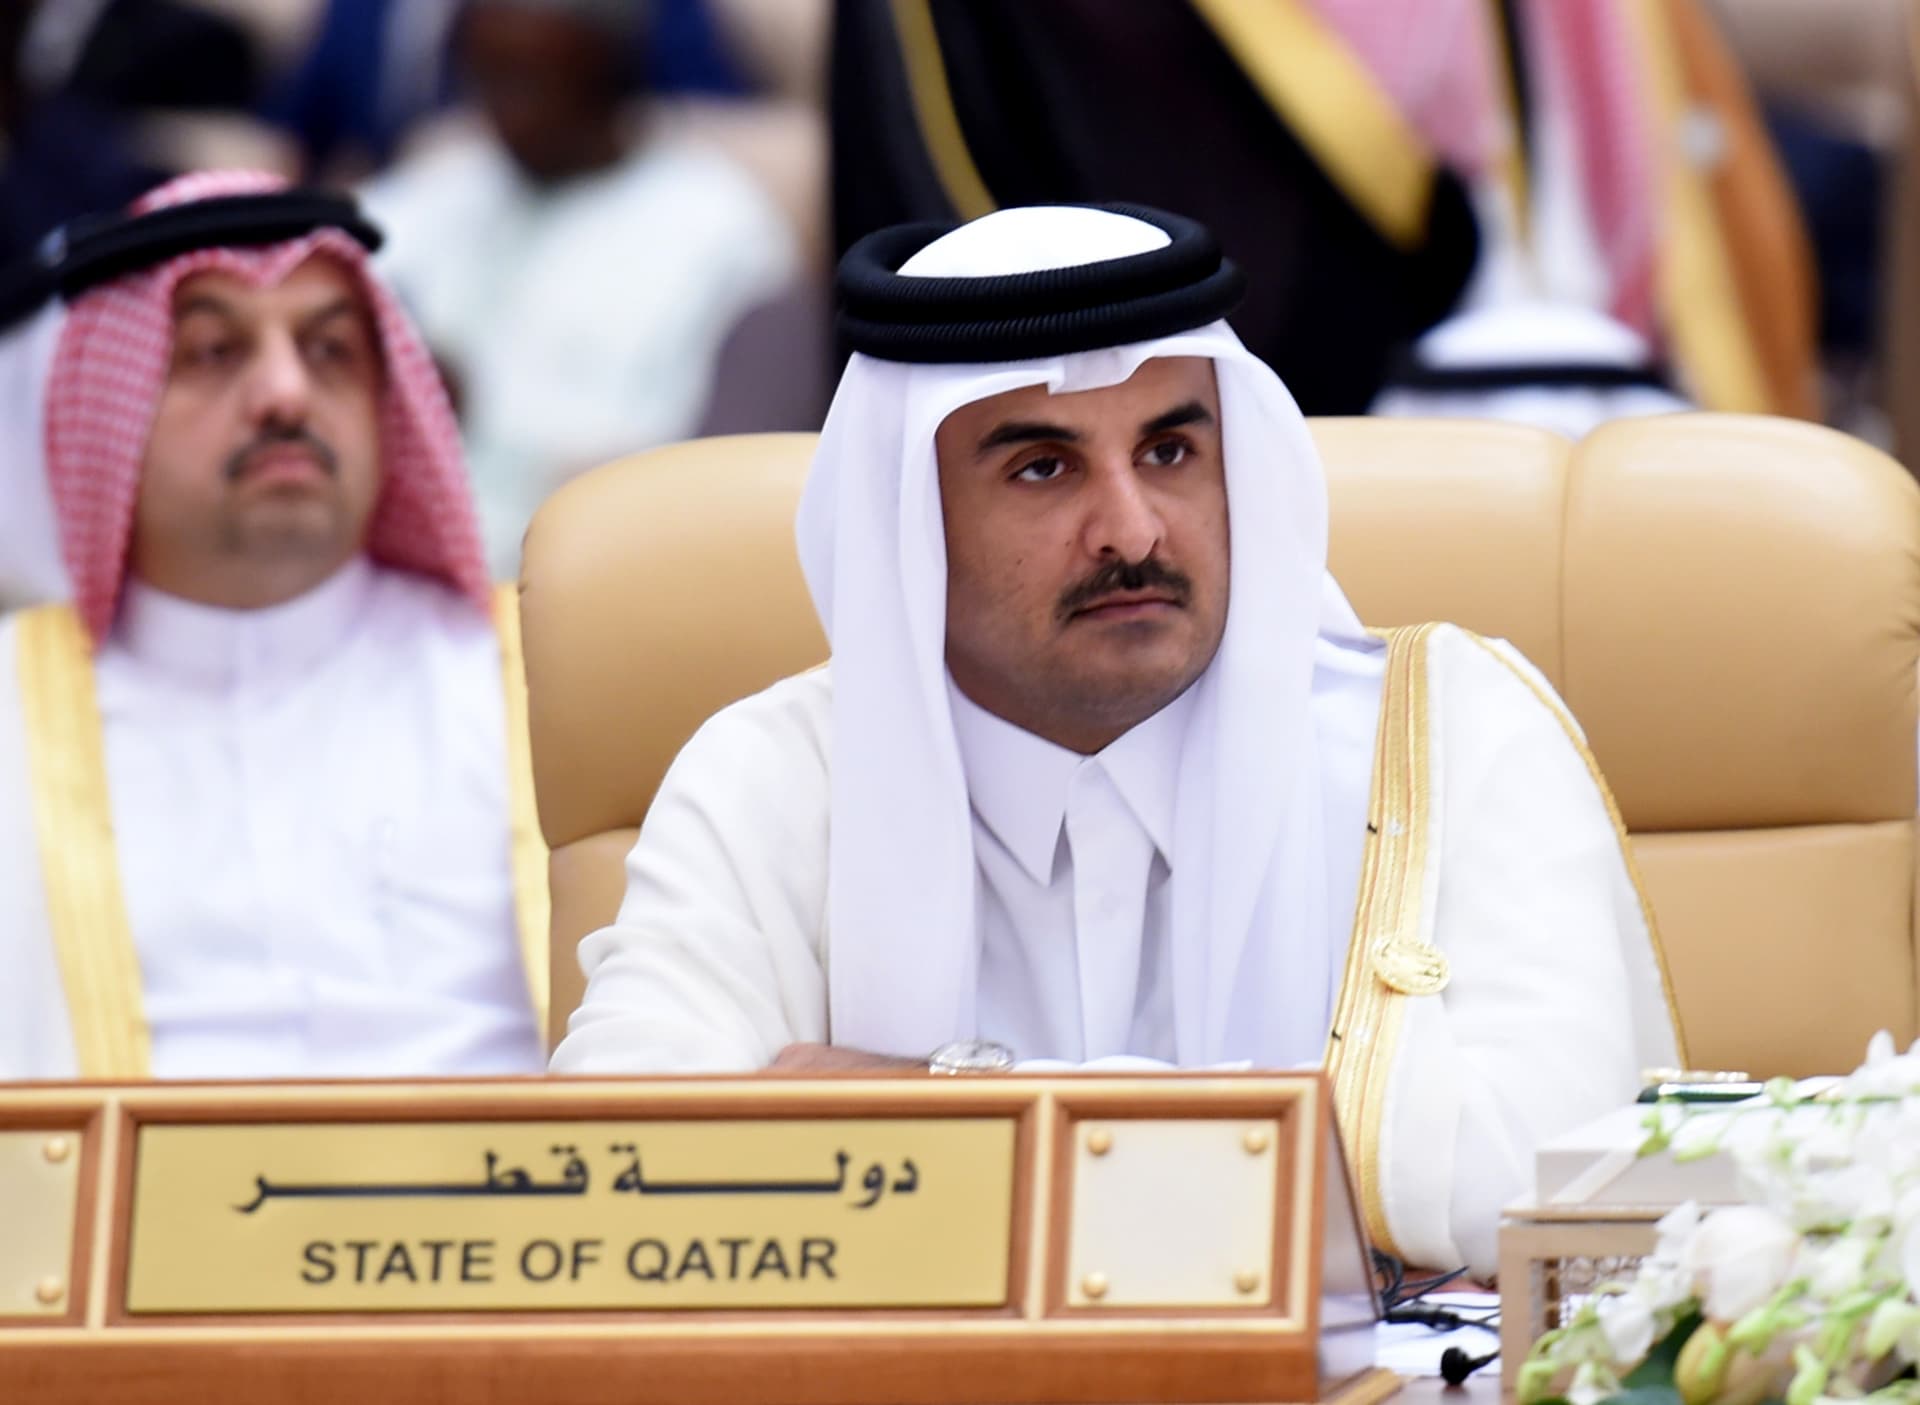 سفير قطري: السعودية والإمارات والبحرين "لا تمثل مجلس التعاون".. وأمريكا بعثت لهم "رسالة واضحة"